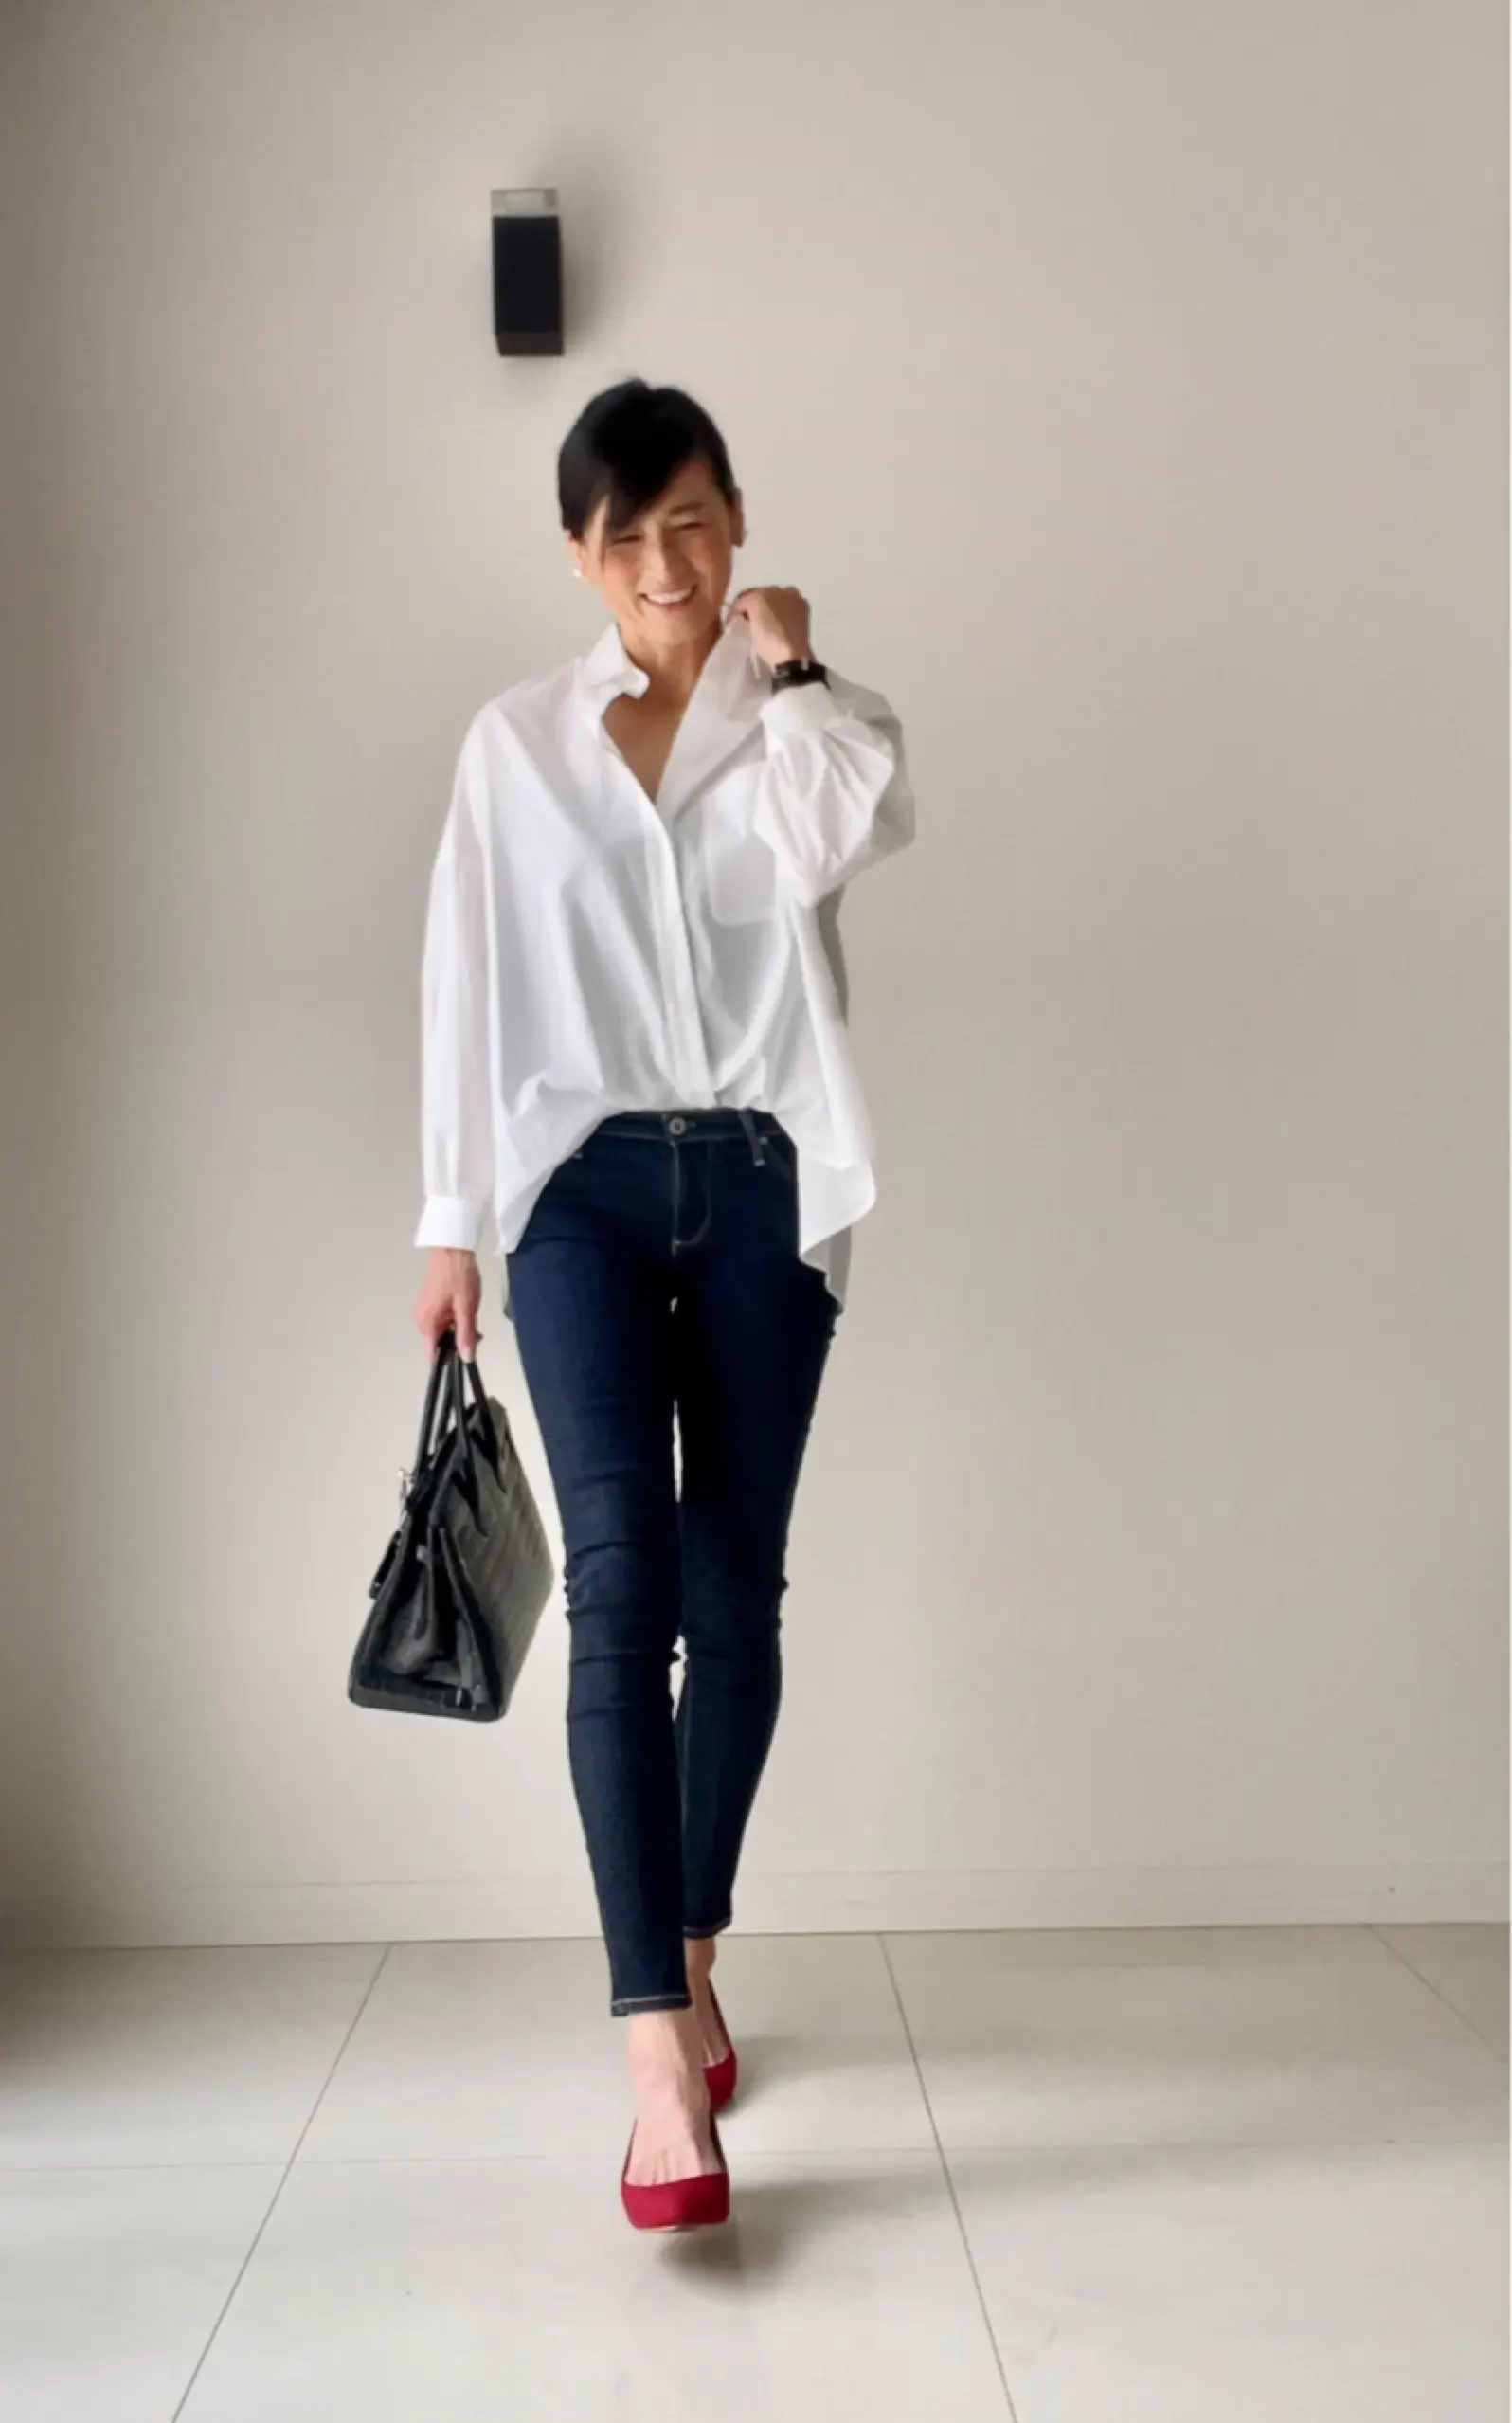 白シャツは鉄板コーデで | 華組 豊田真由美のブログ | 華組ブログ | Web eclat